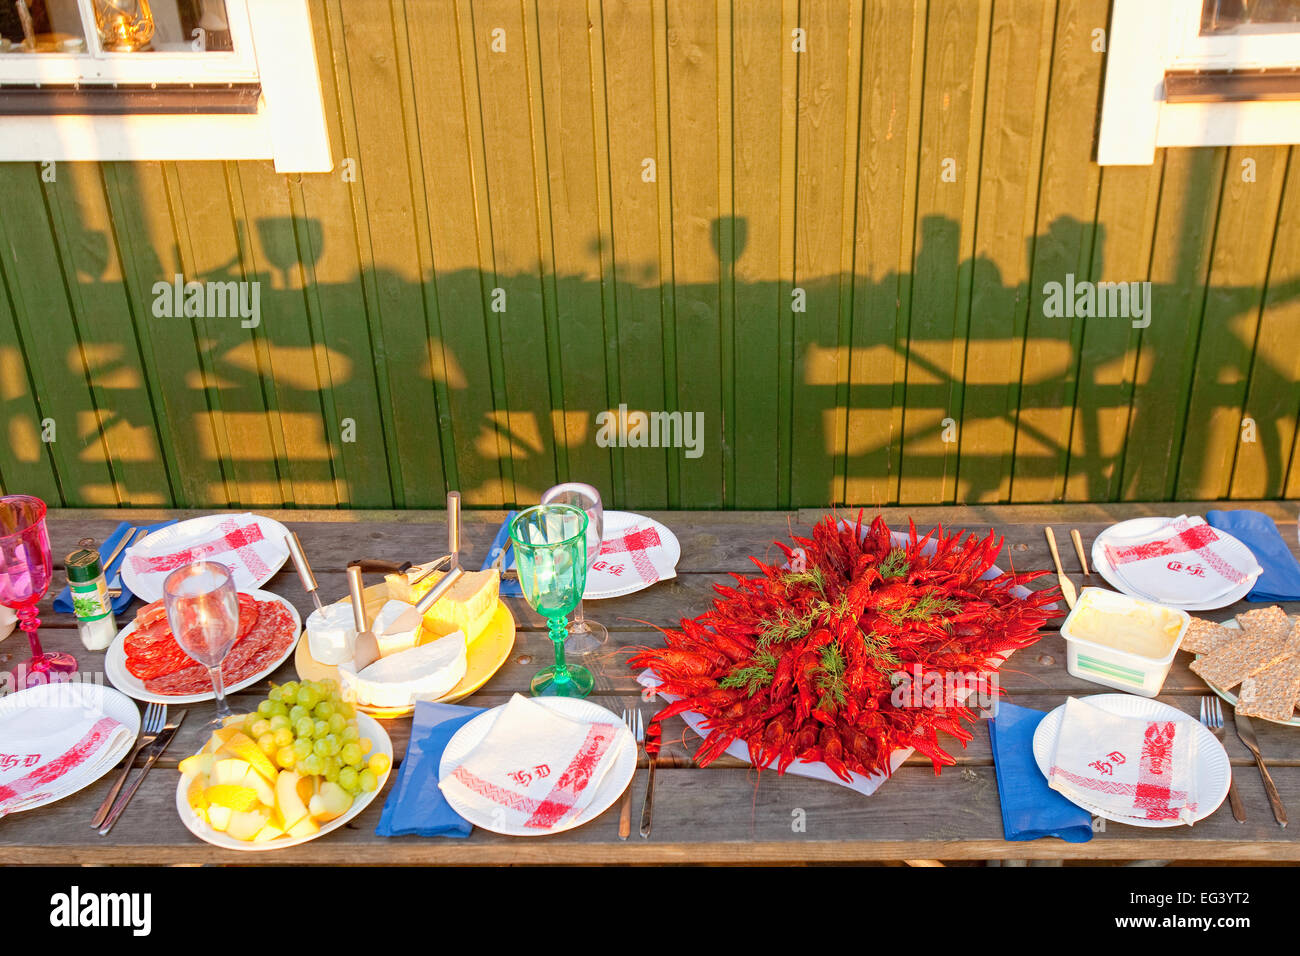 Schweden - Krebse mit Dill im traditionellen schwedischen Krebse Partei gegessen. Stockfoto